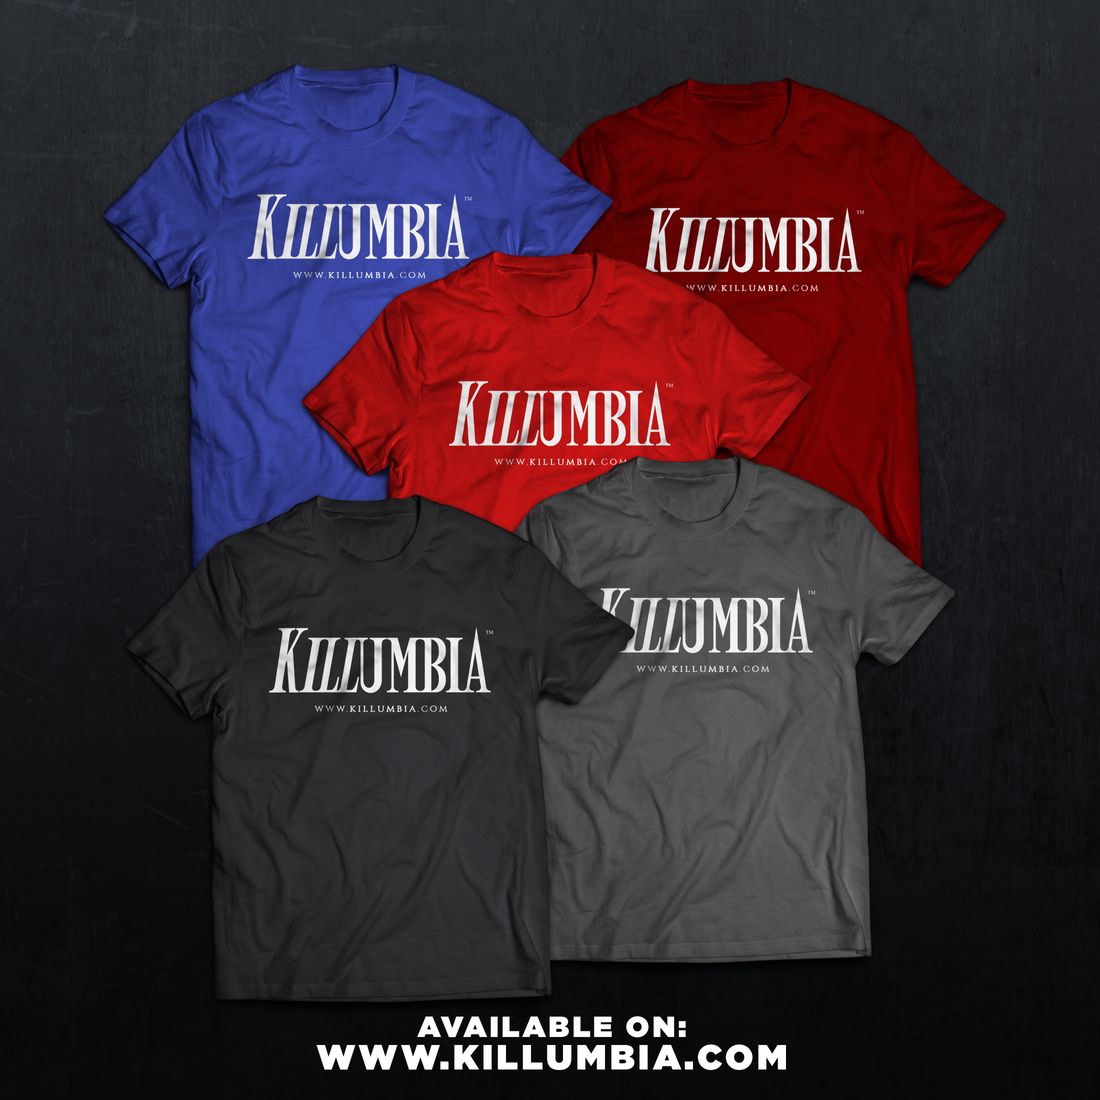 Killumbia Brand - T-Shirts
